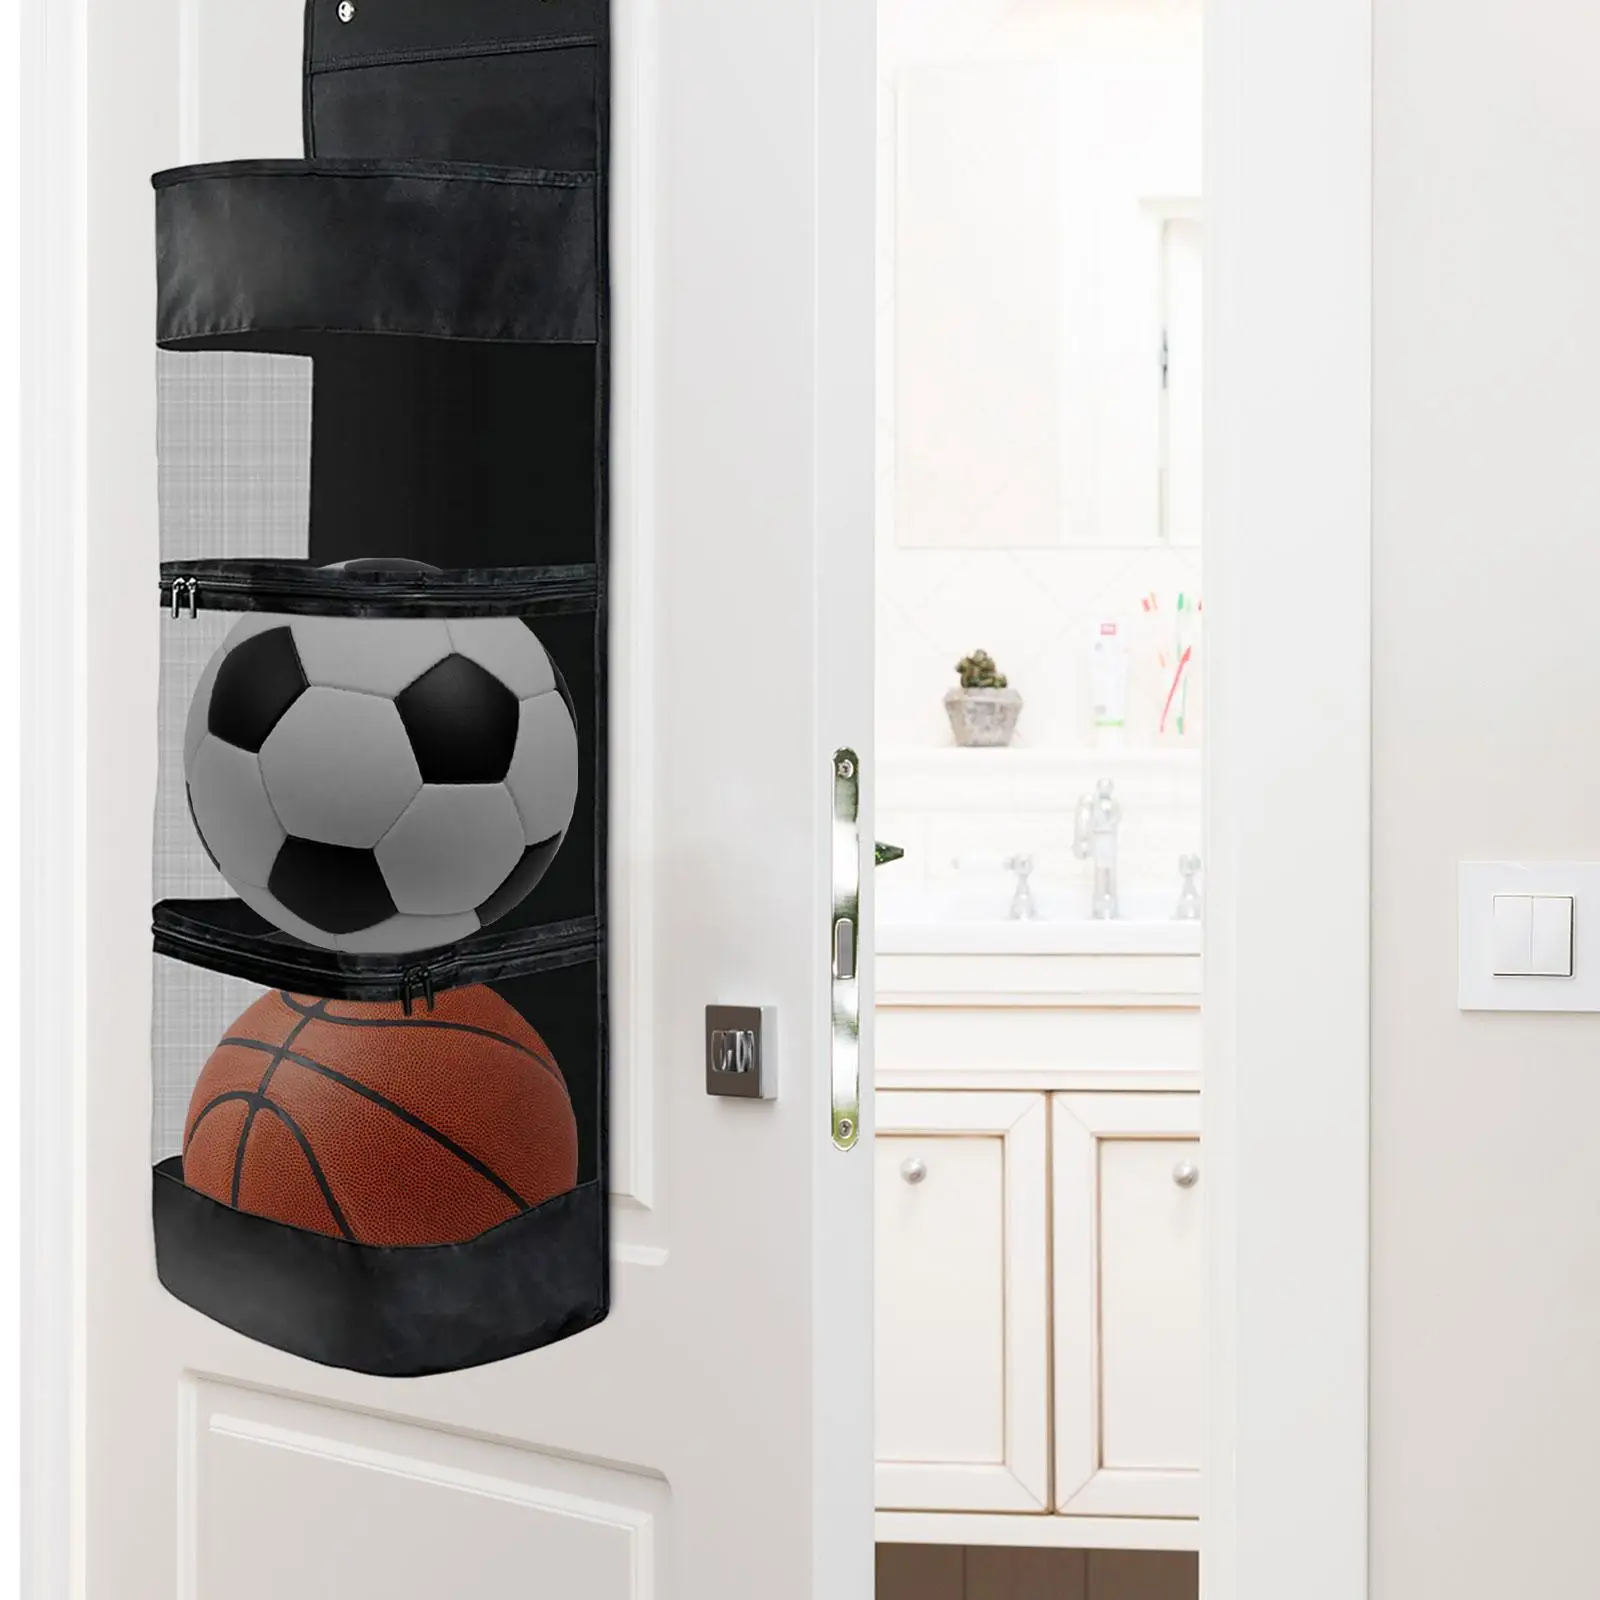 over Door Hanging Organizer Durable Garage Equipment Organizer for Basketball Tennis Sports Gear Volleyball Toy Storage